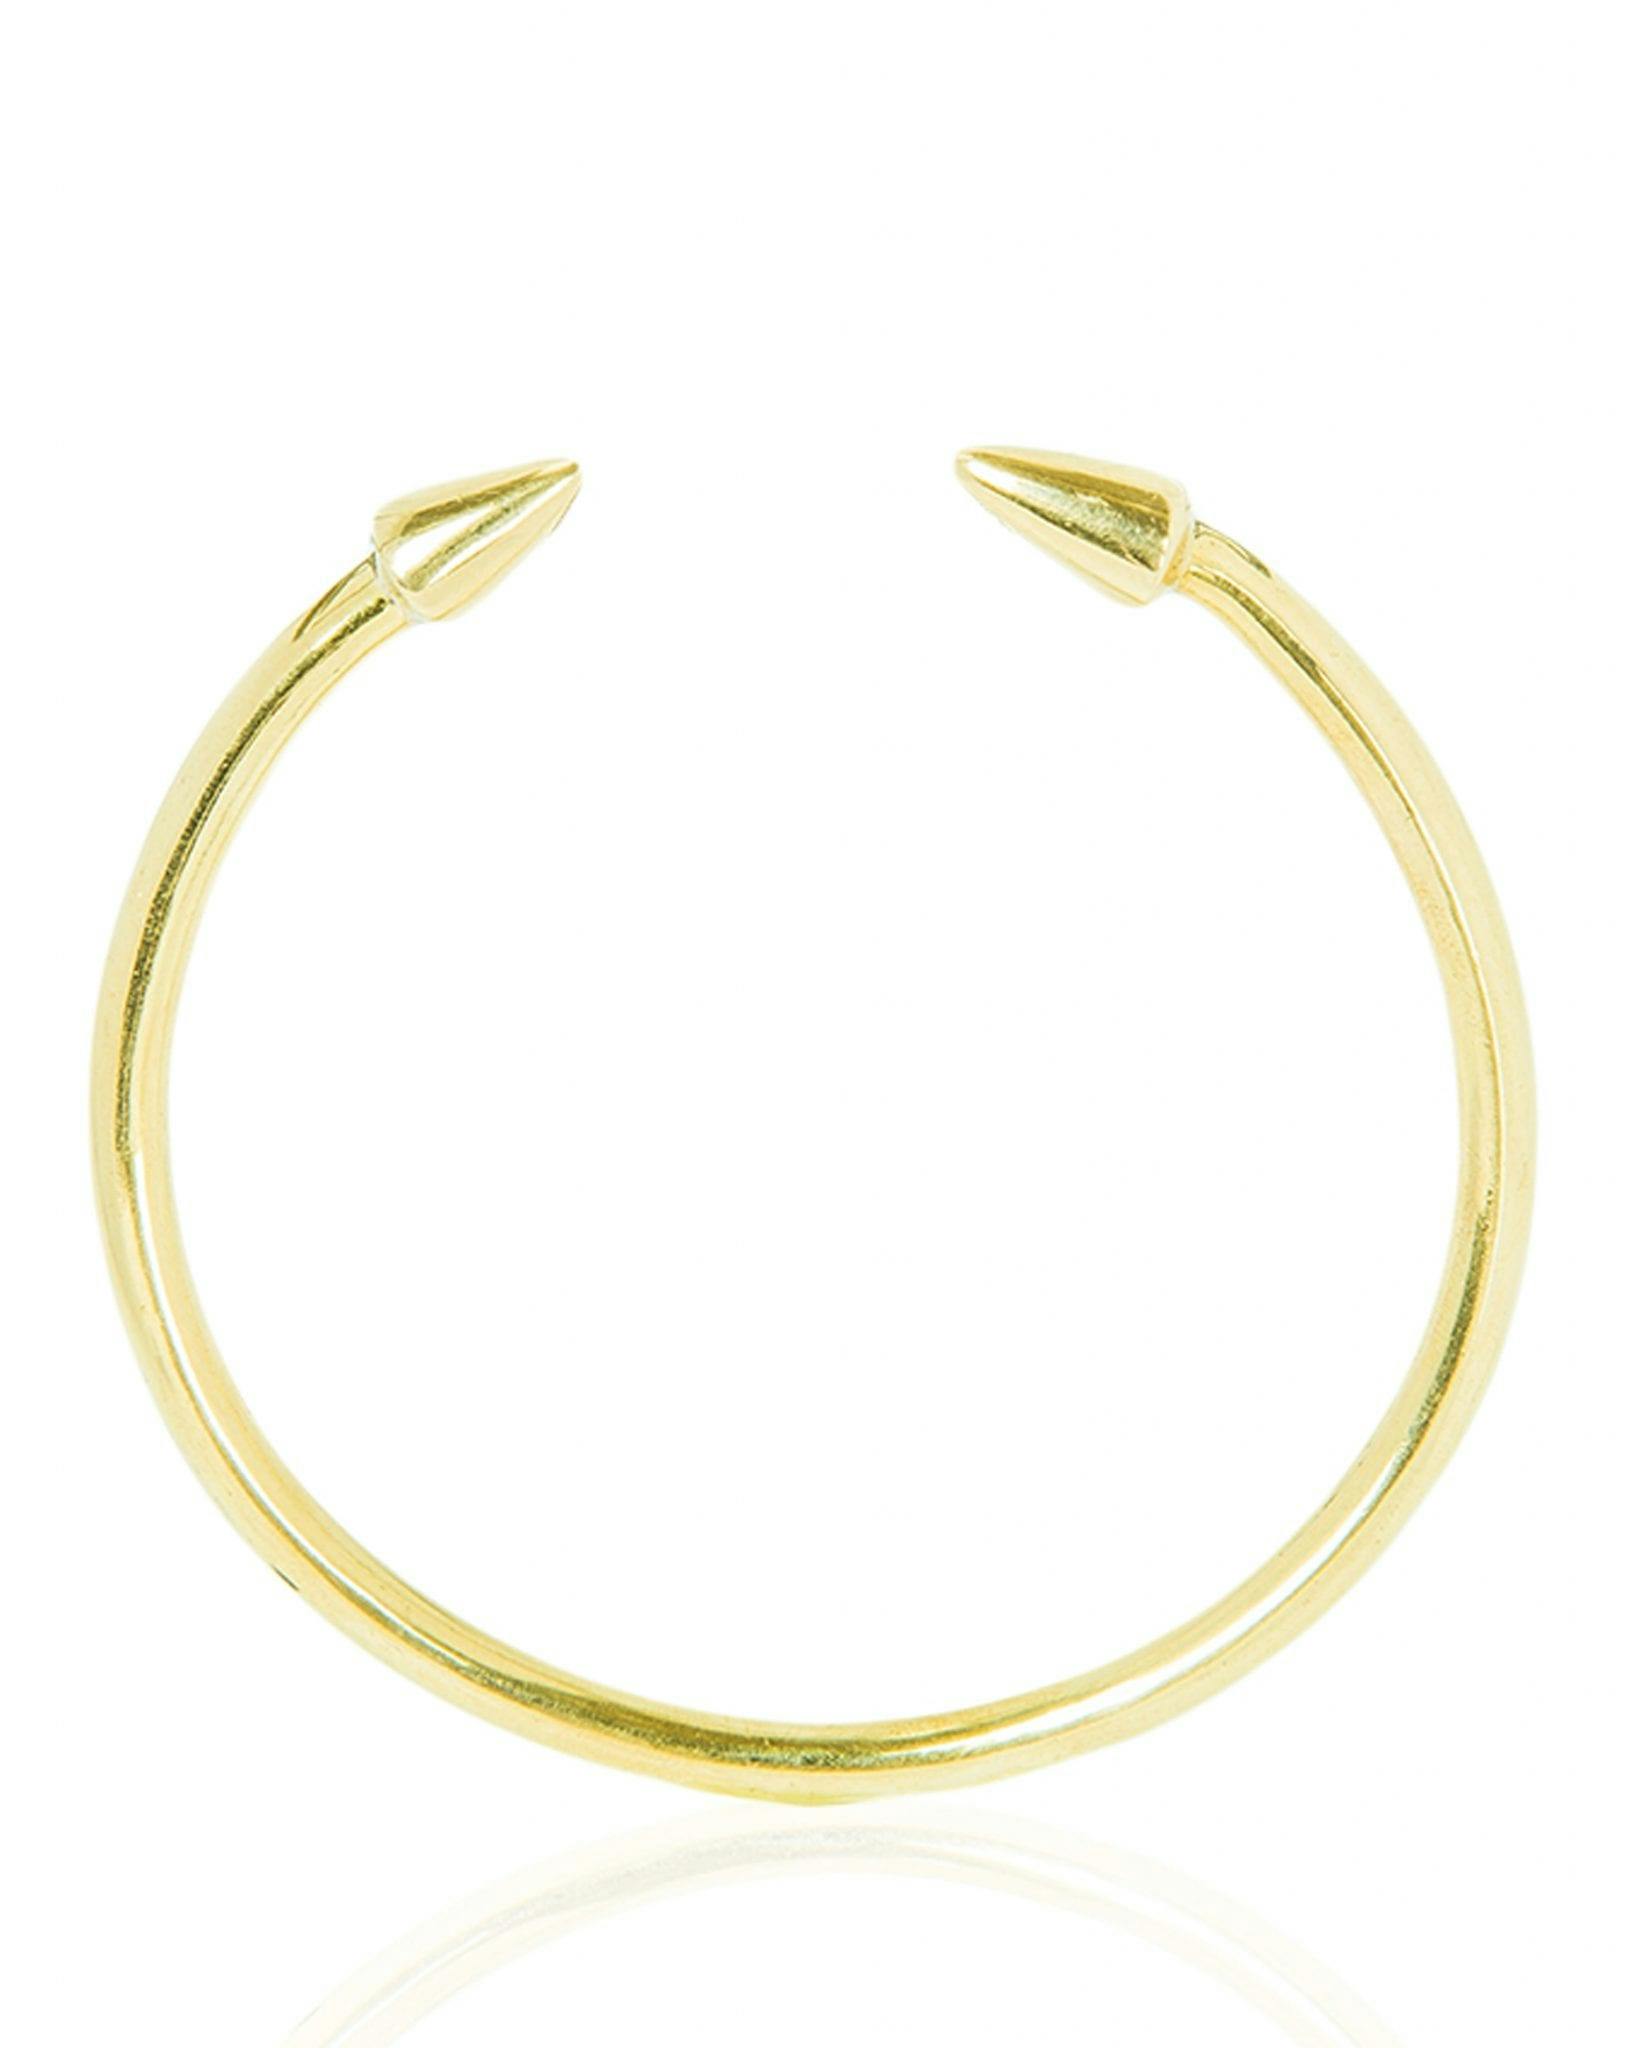 Mbadon Bracelet, a product by Adele Dejak